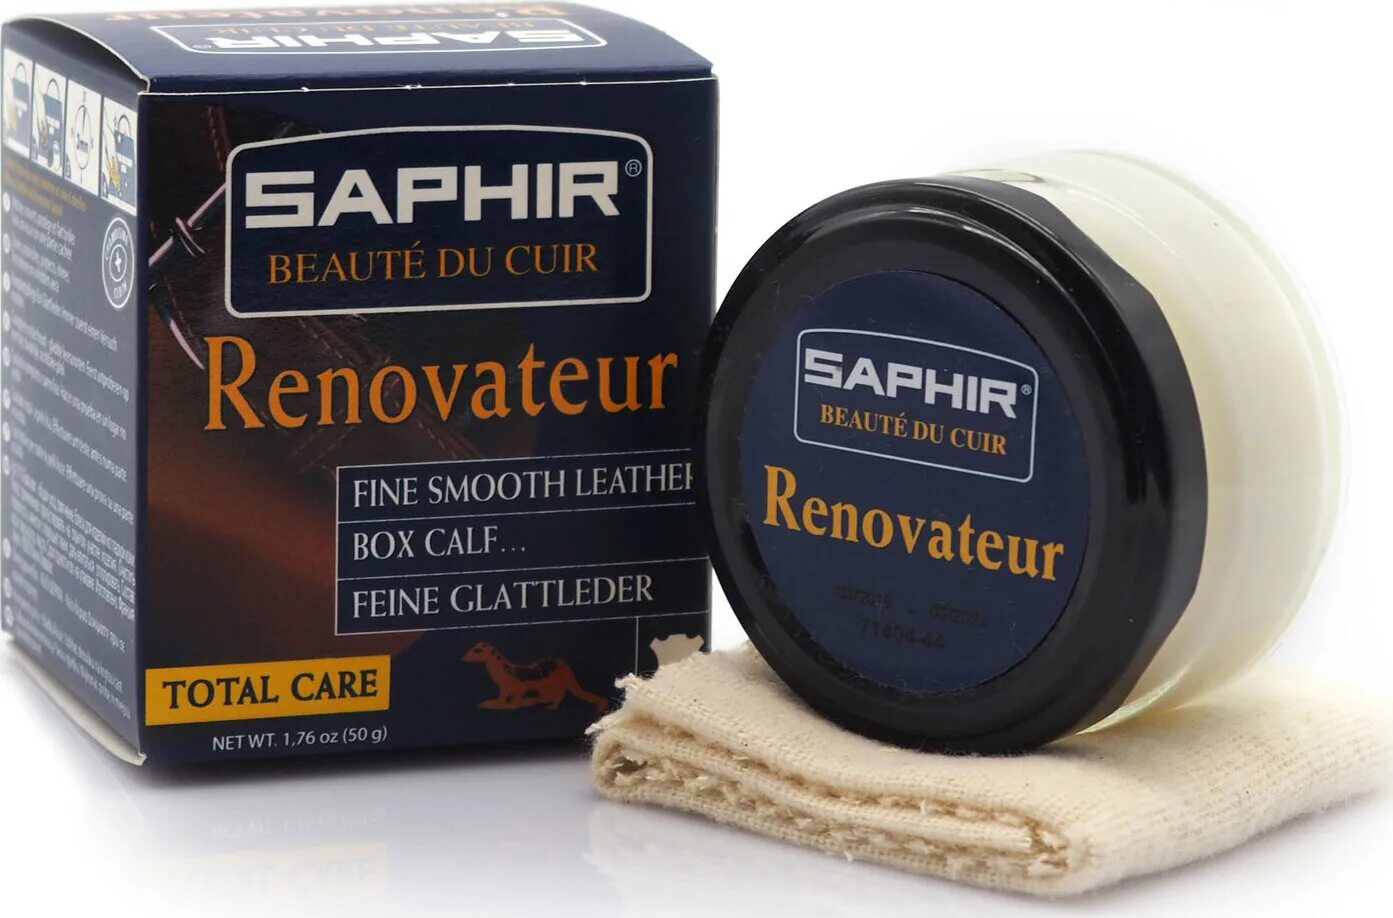 Saphir Renovateur. Saphir для обуви. Бальзам восстановитель кожи Saphir. Sapphire бальзам для обуви.